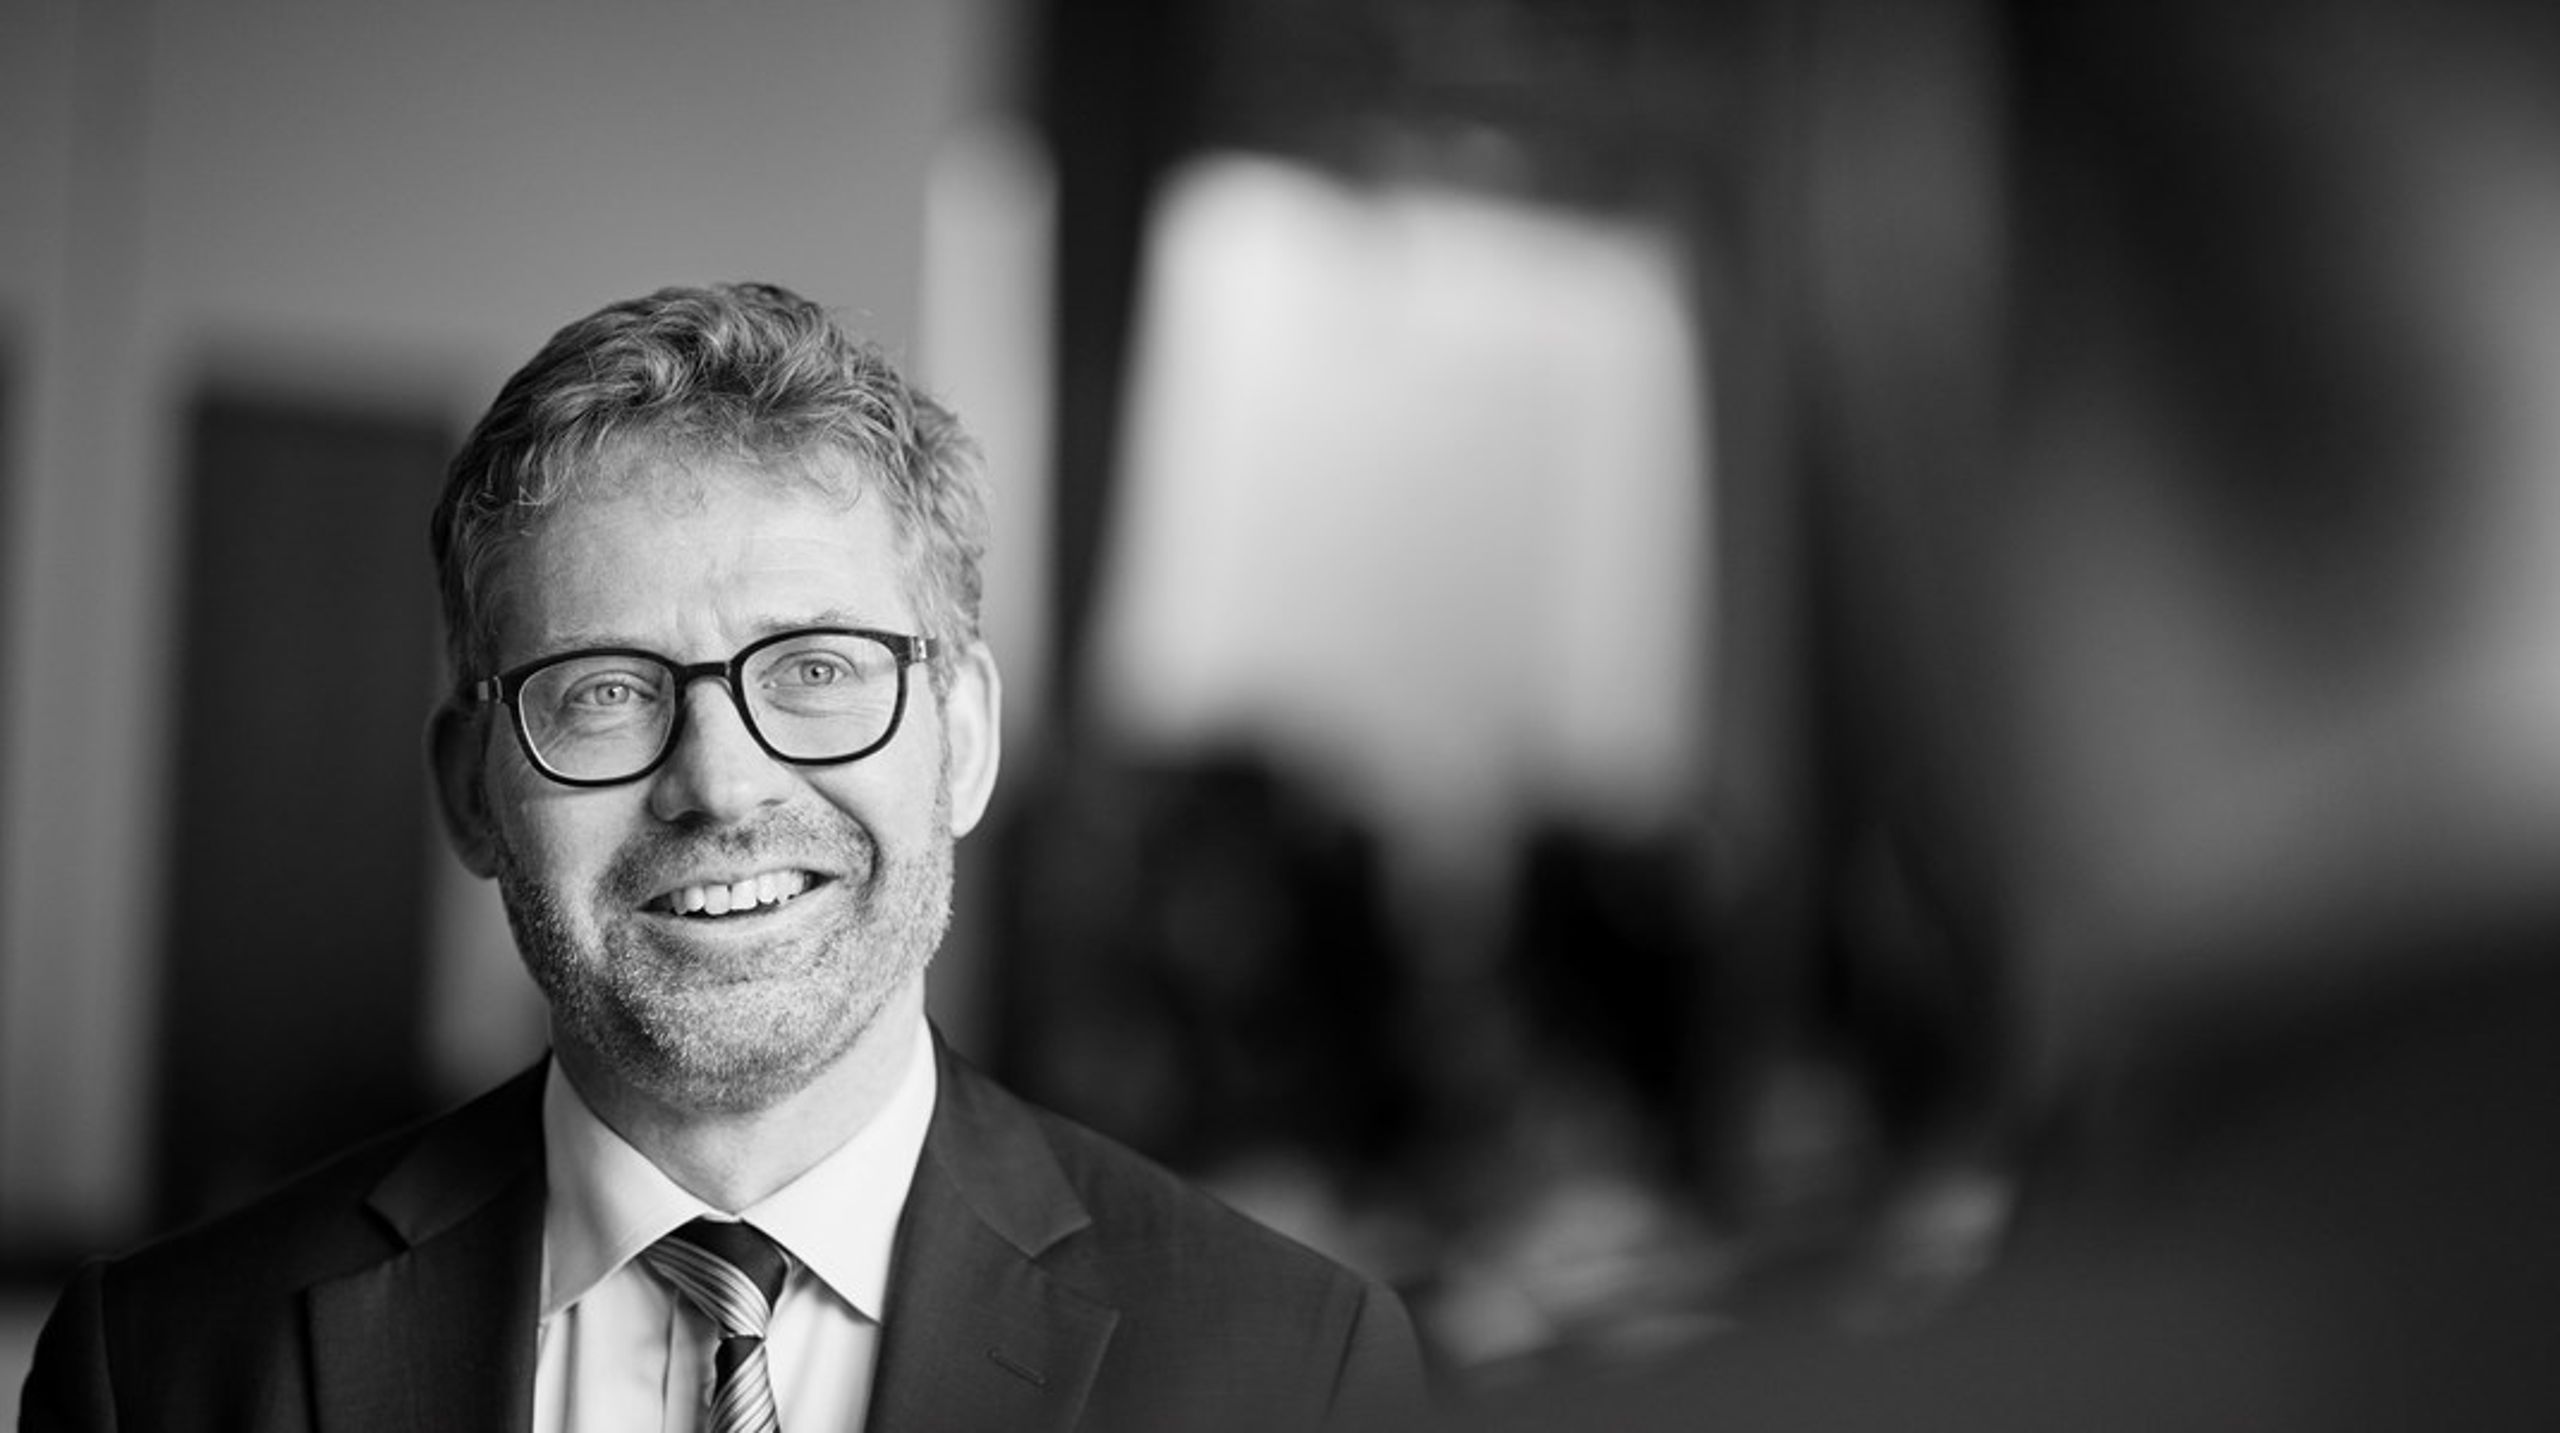 "Vi får reduceret risikoen, og det kommer virksomheden til gavn," siger Michael Zöllner,&nbsp;direktør med ansvar for små- og mellemstore virksomheder i Danmarks Eksport- og Investeringsfond, om den nye aftale.&nbsp;